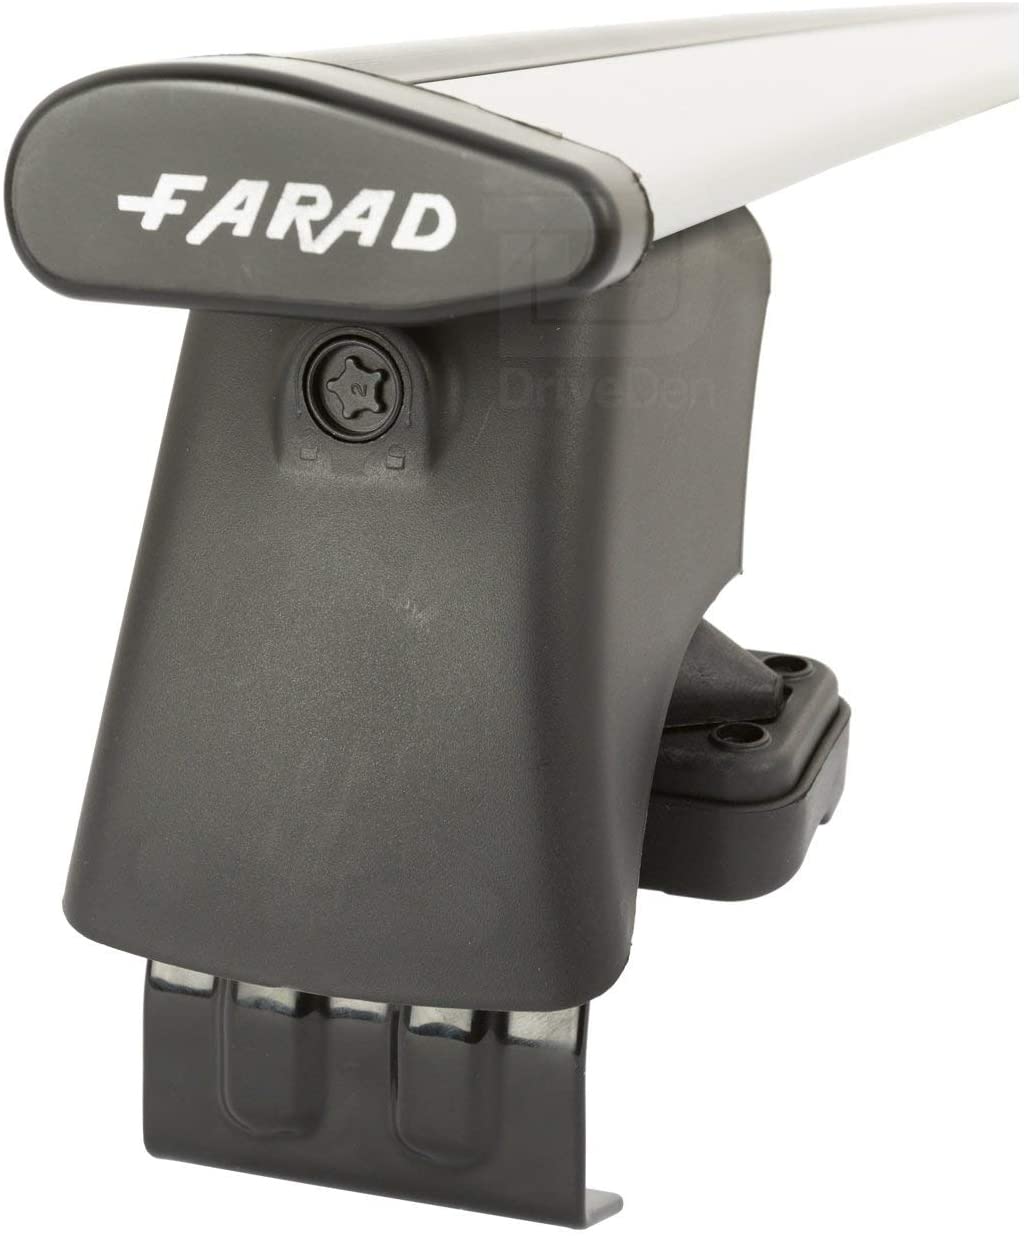 FARAD-Kit H2 per barre portatutto - Citroen C3 2016> (senza corrimano)